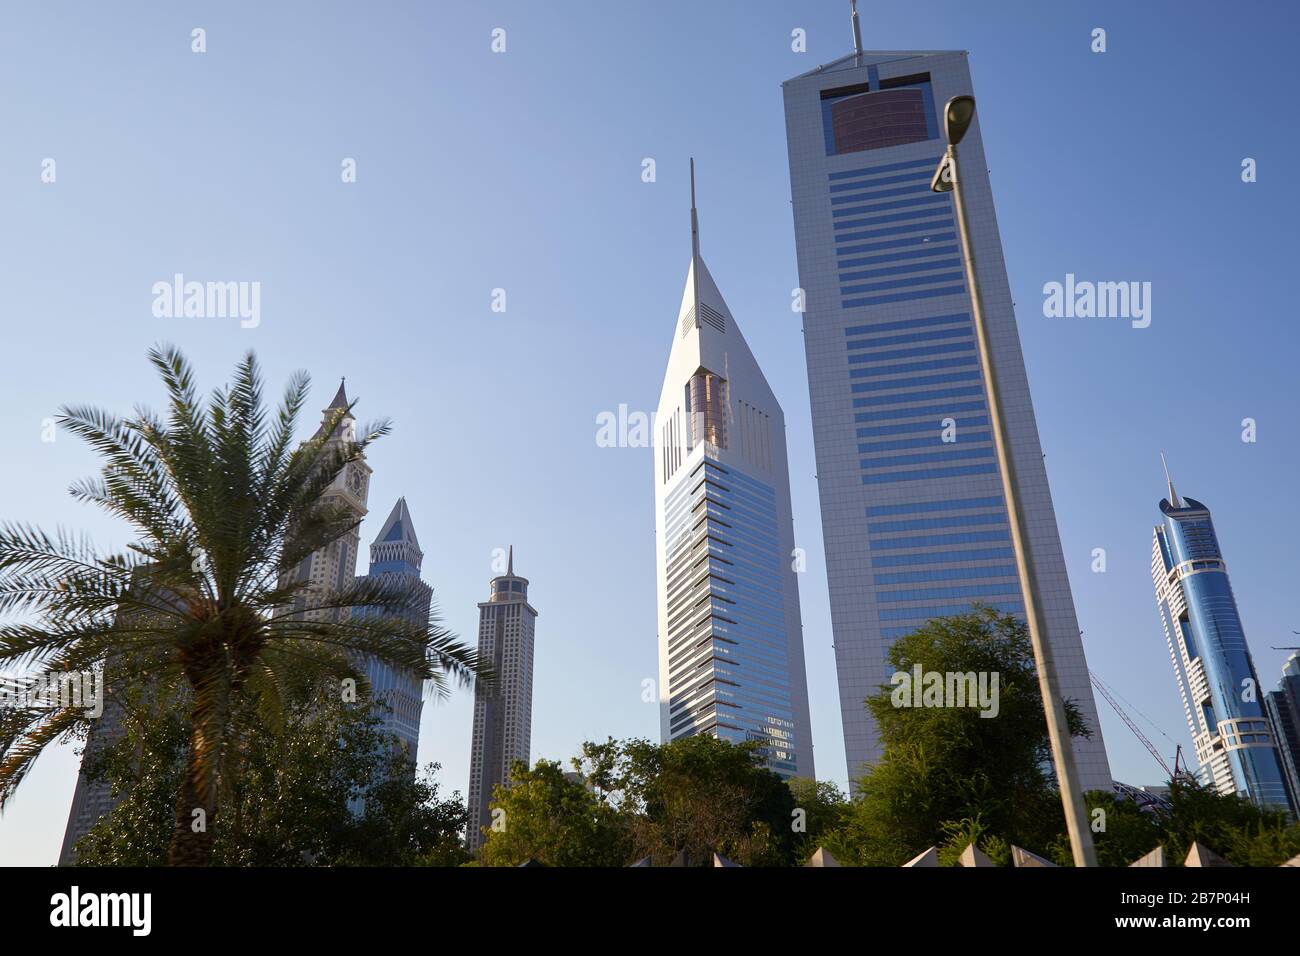 DUBAI, VEREINIGTE ARABISCHE EMIRATE - 23. NOVEMBER 2019: Dubai Financial District, moderne Doppelhochhäuser und Palmen an einem sonnigen Tag, blauer Himmel Stockfoto